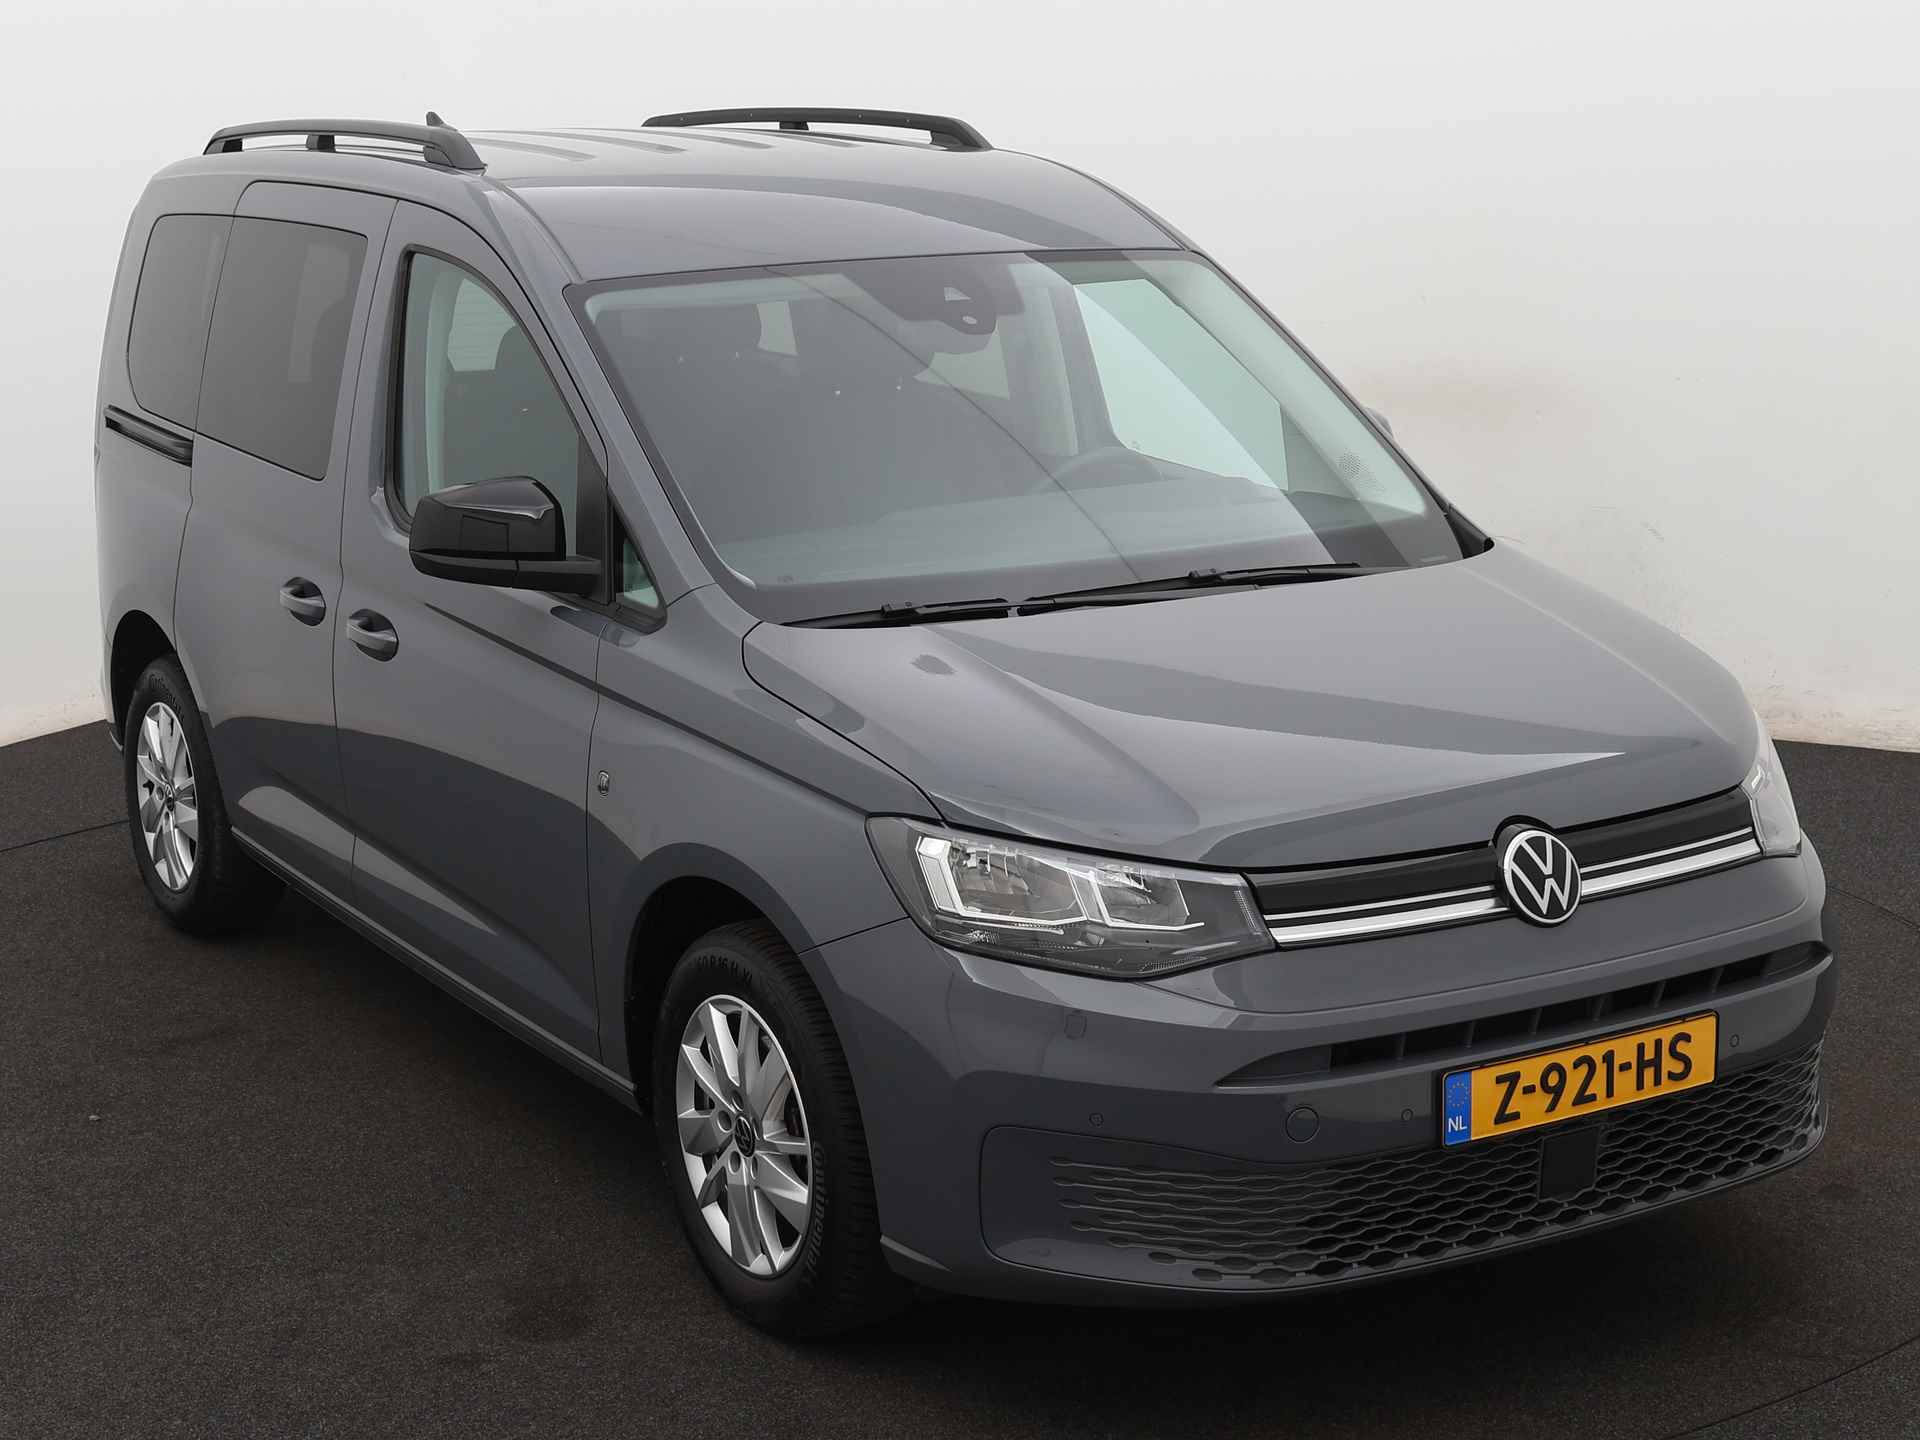 Volkswagen Caddy 1.5 TSI Life Ingepland voor nieuwe bodemverlaging t.b.v. rolstoelvervoer (Prijs incl. bodemverlaging) - 23/36